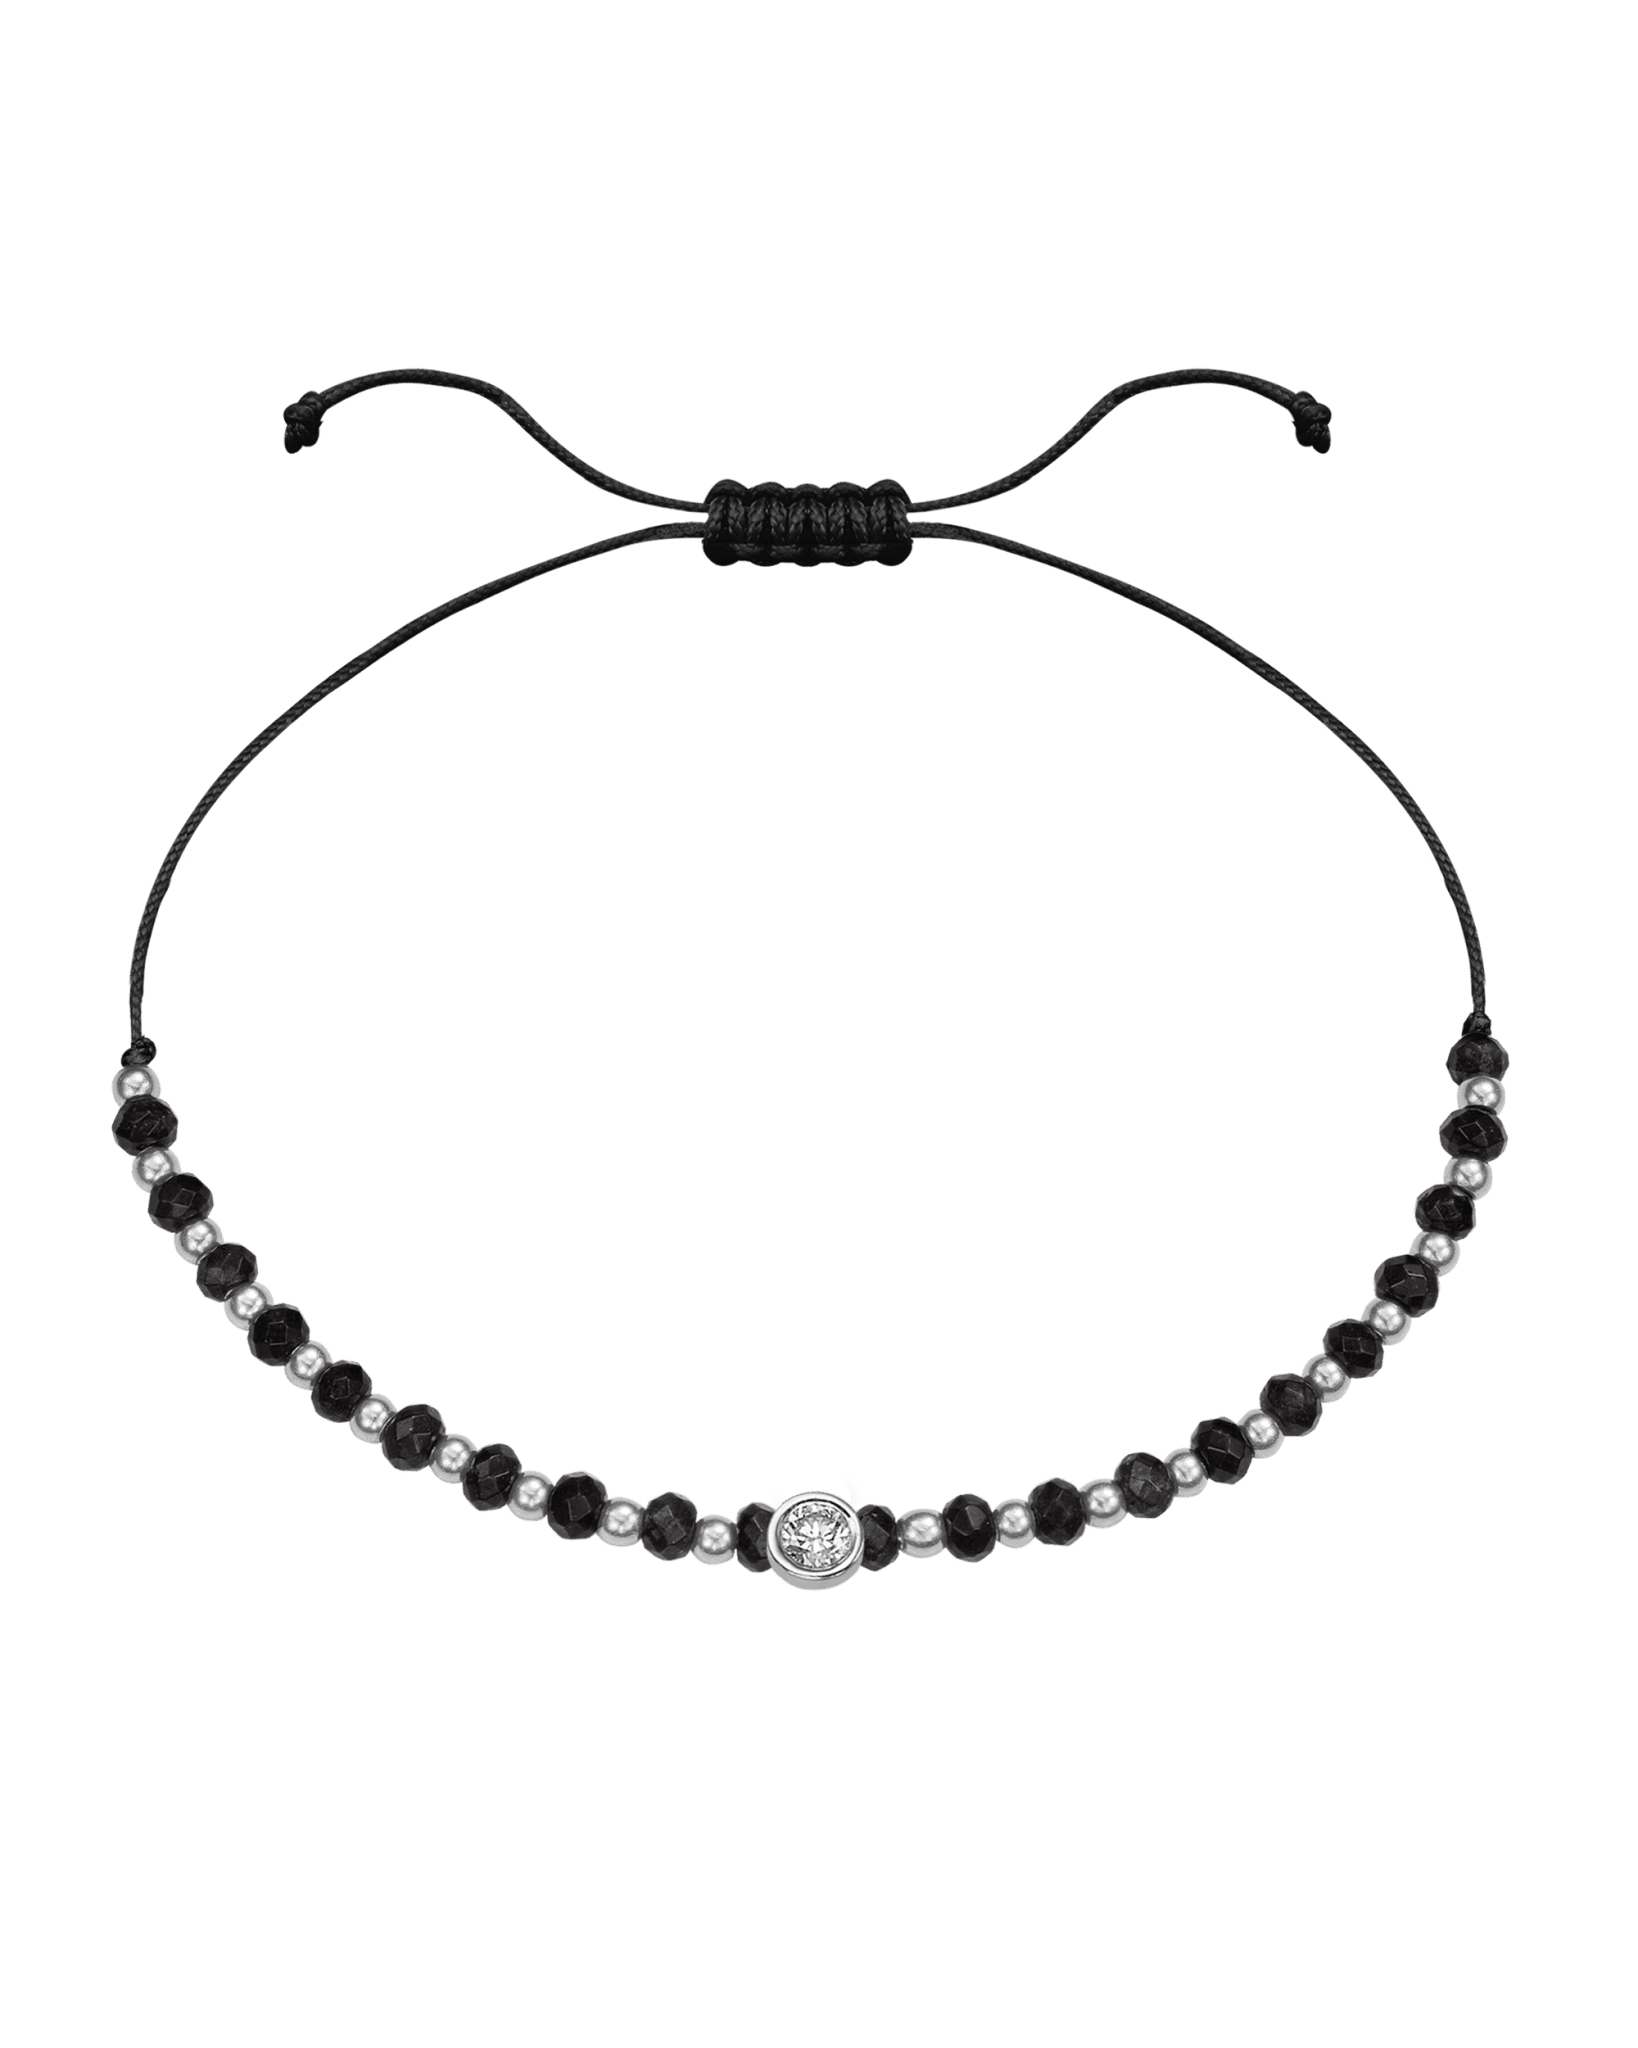 Black Onyx Gemstone String of Love Bracelet for Protection - 14K White Gold Bracelets 14K Solid Gold Black Large: 0.1ct 